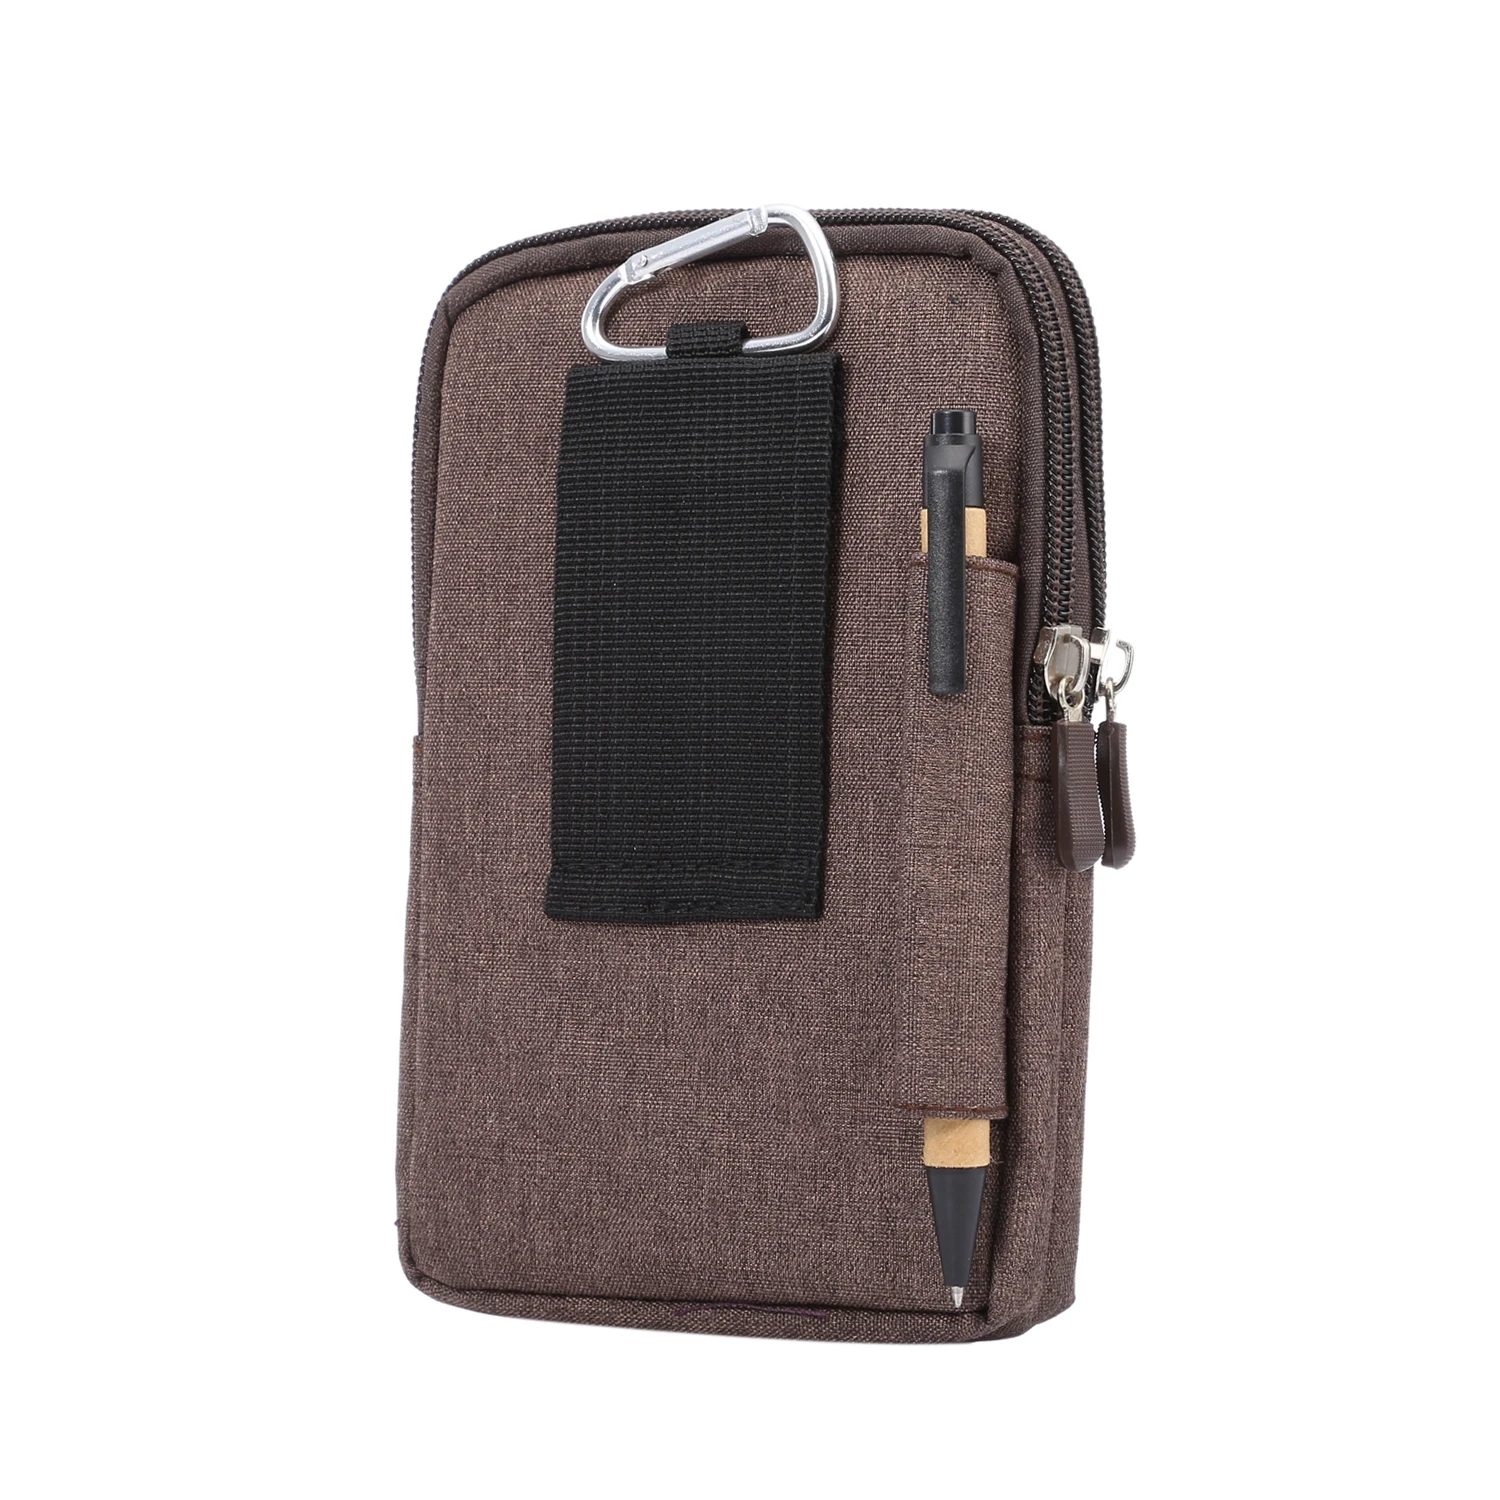 Джинсовая кожаная сумка для телефона с зажимом для ремня, поясная сумка-кошелек, чехол для Xiaomi Redmi 2A 3S Pro 4A 4X5 Plus 5A на молнии, чехол 6,3"